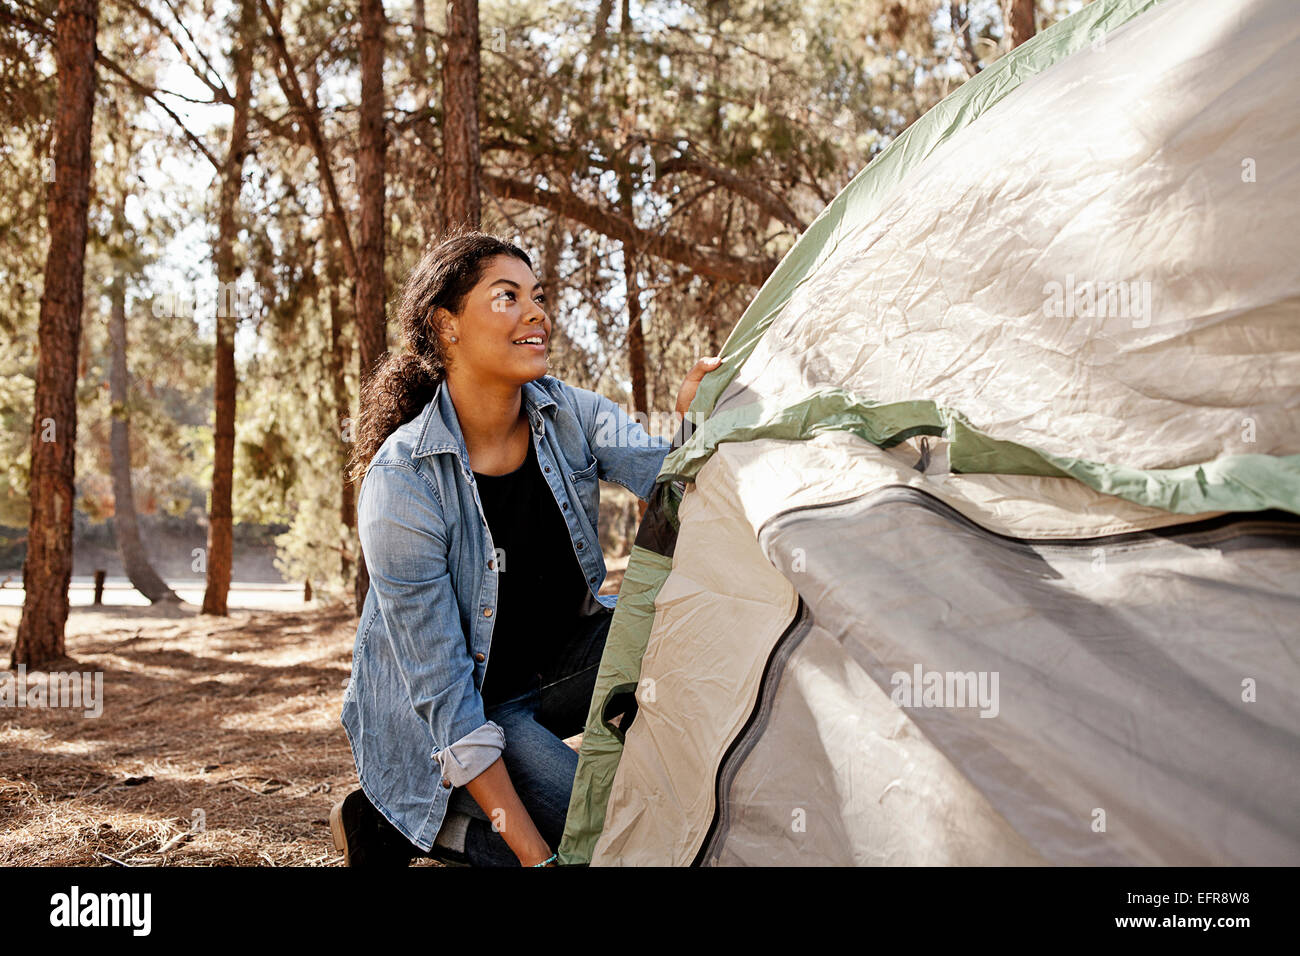 Junge Frau im Wald Zelt aufstellen Stockfoto